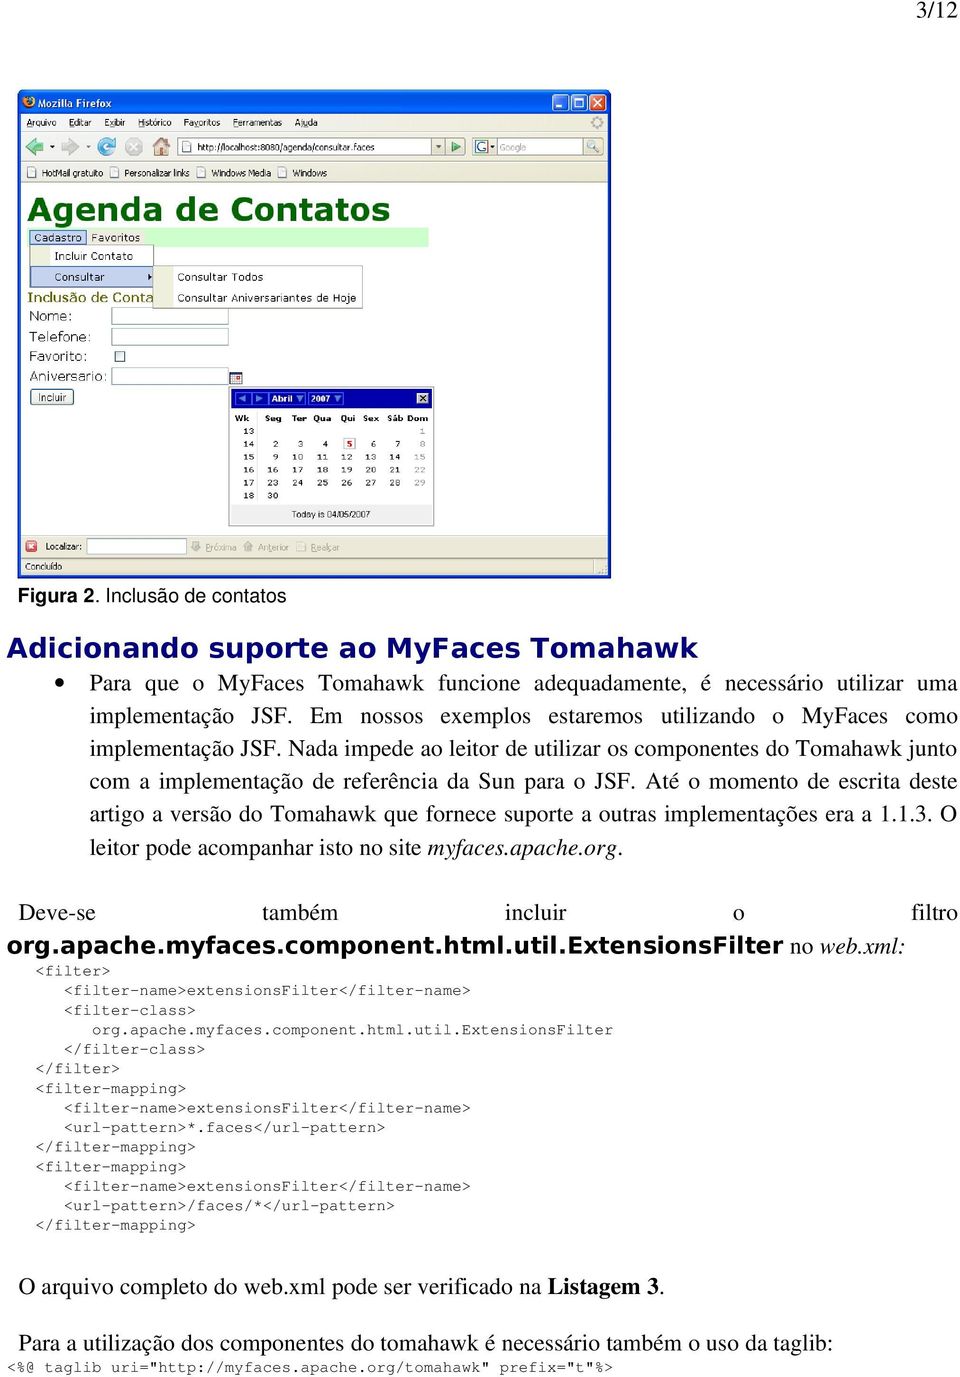 Até o momento de escrita deste artigo a versão do Tomahawk que fornece suporte a outras implementações era a 1.1.3. O leitor pode acompanhar isto no site myfaces.apache.org.